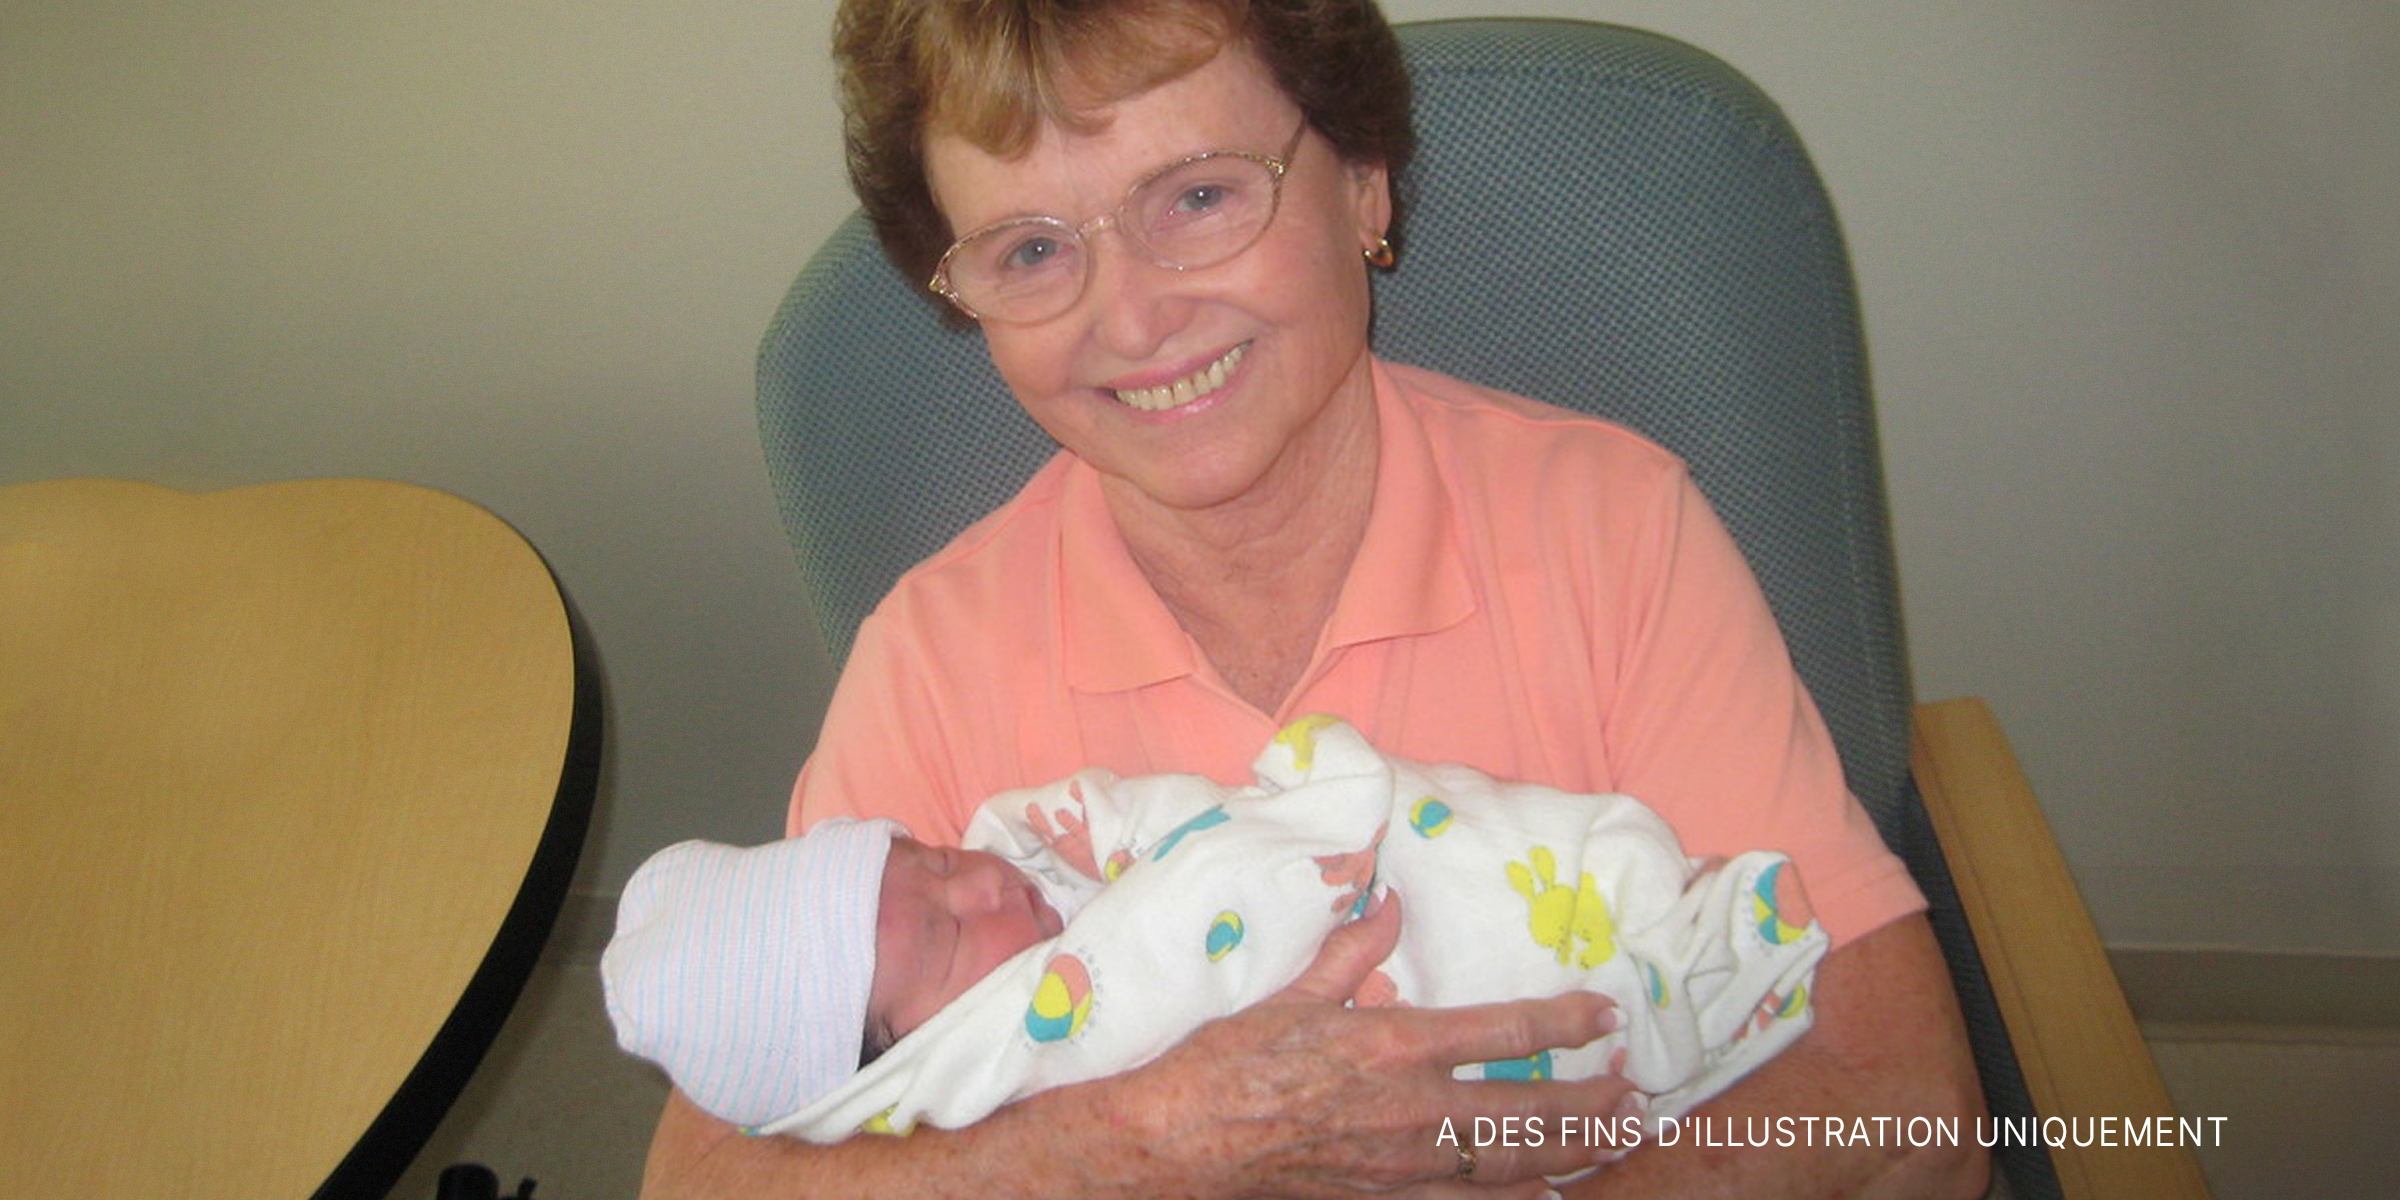 Une femme âgée tenant un nouveau-né | Source : flickr.com/ryarwood/CC BY-SA 2.0